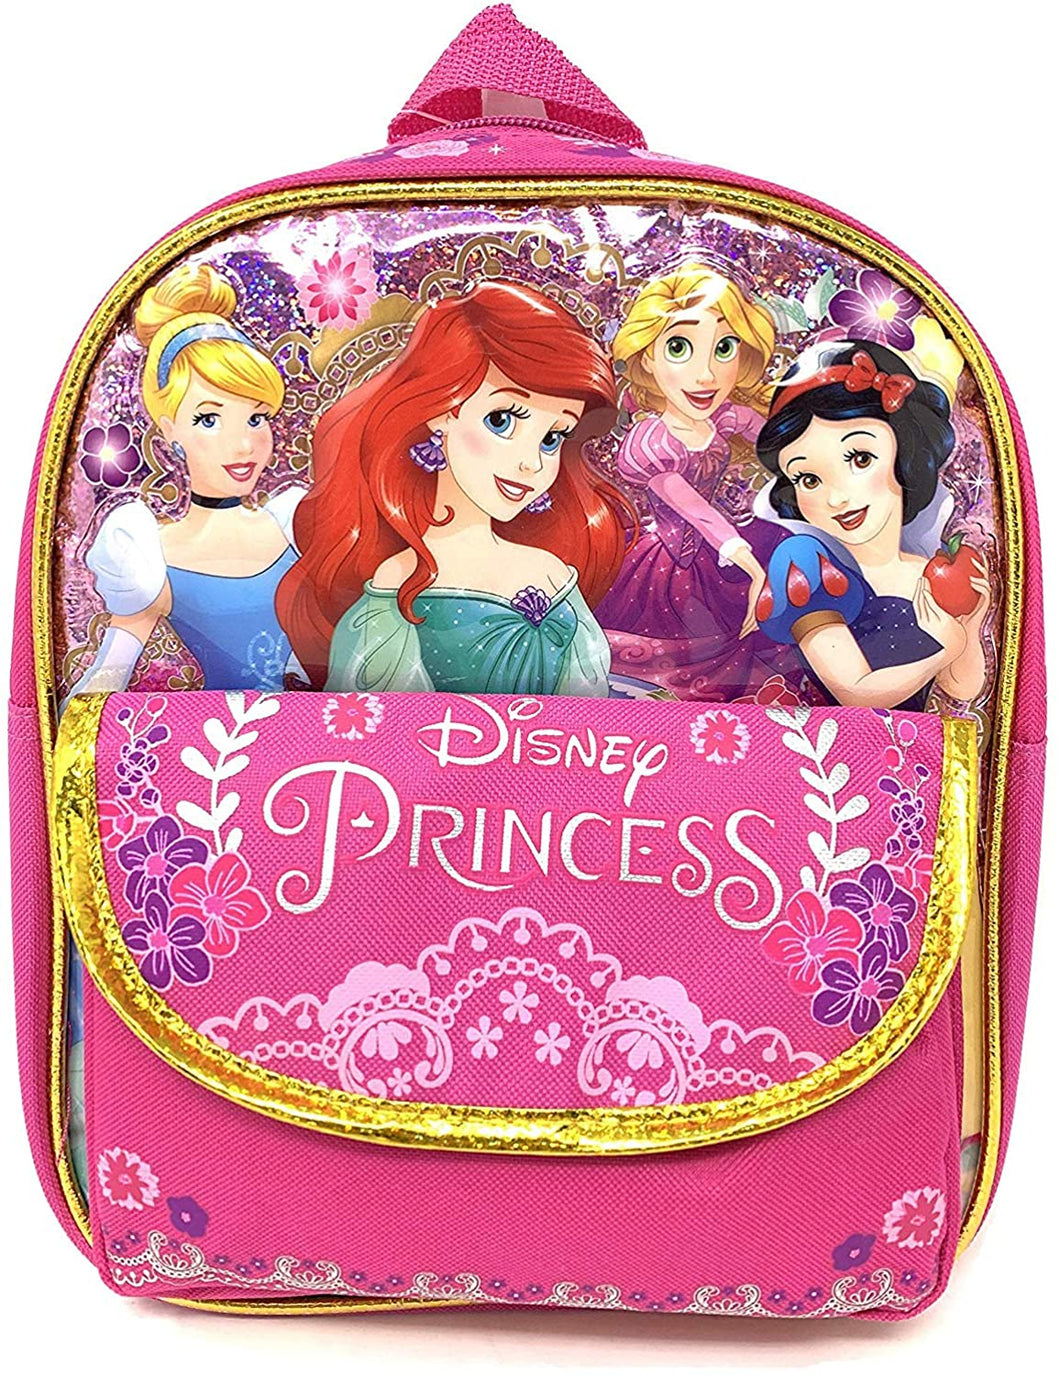 Disney Princess Cinderella Belle Aurora Rapunzel 10